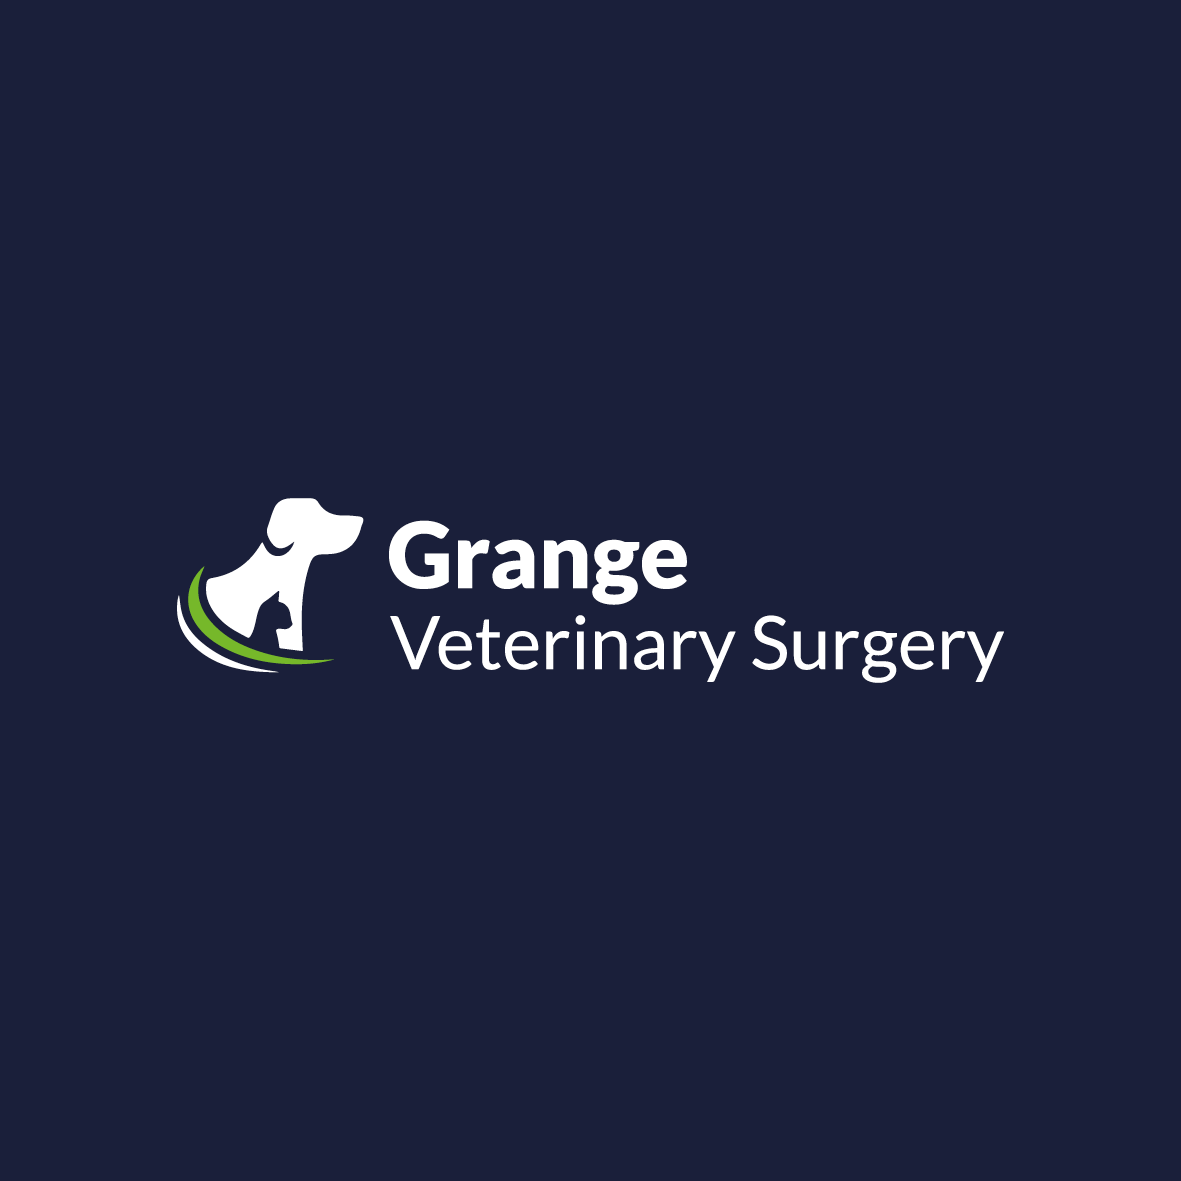 Grange Veterinary Surgery